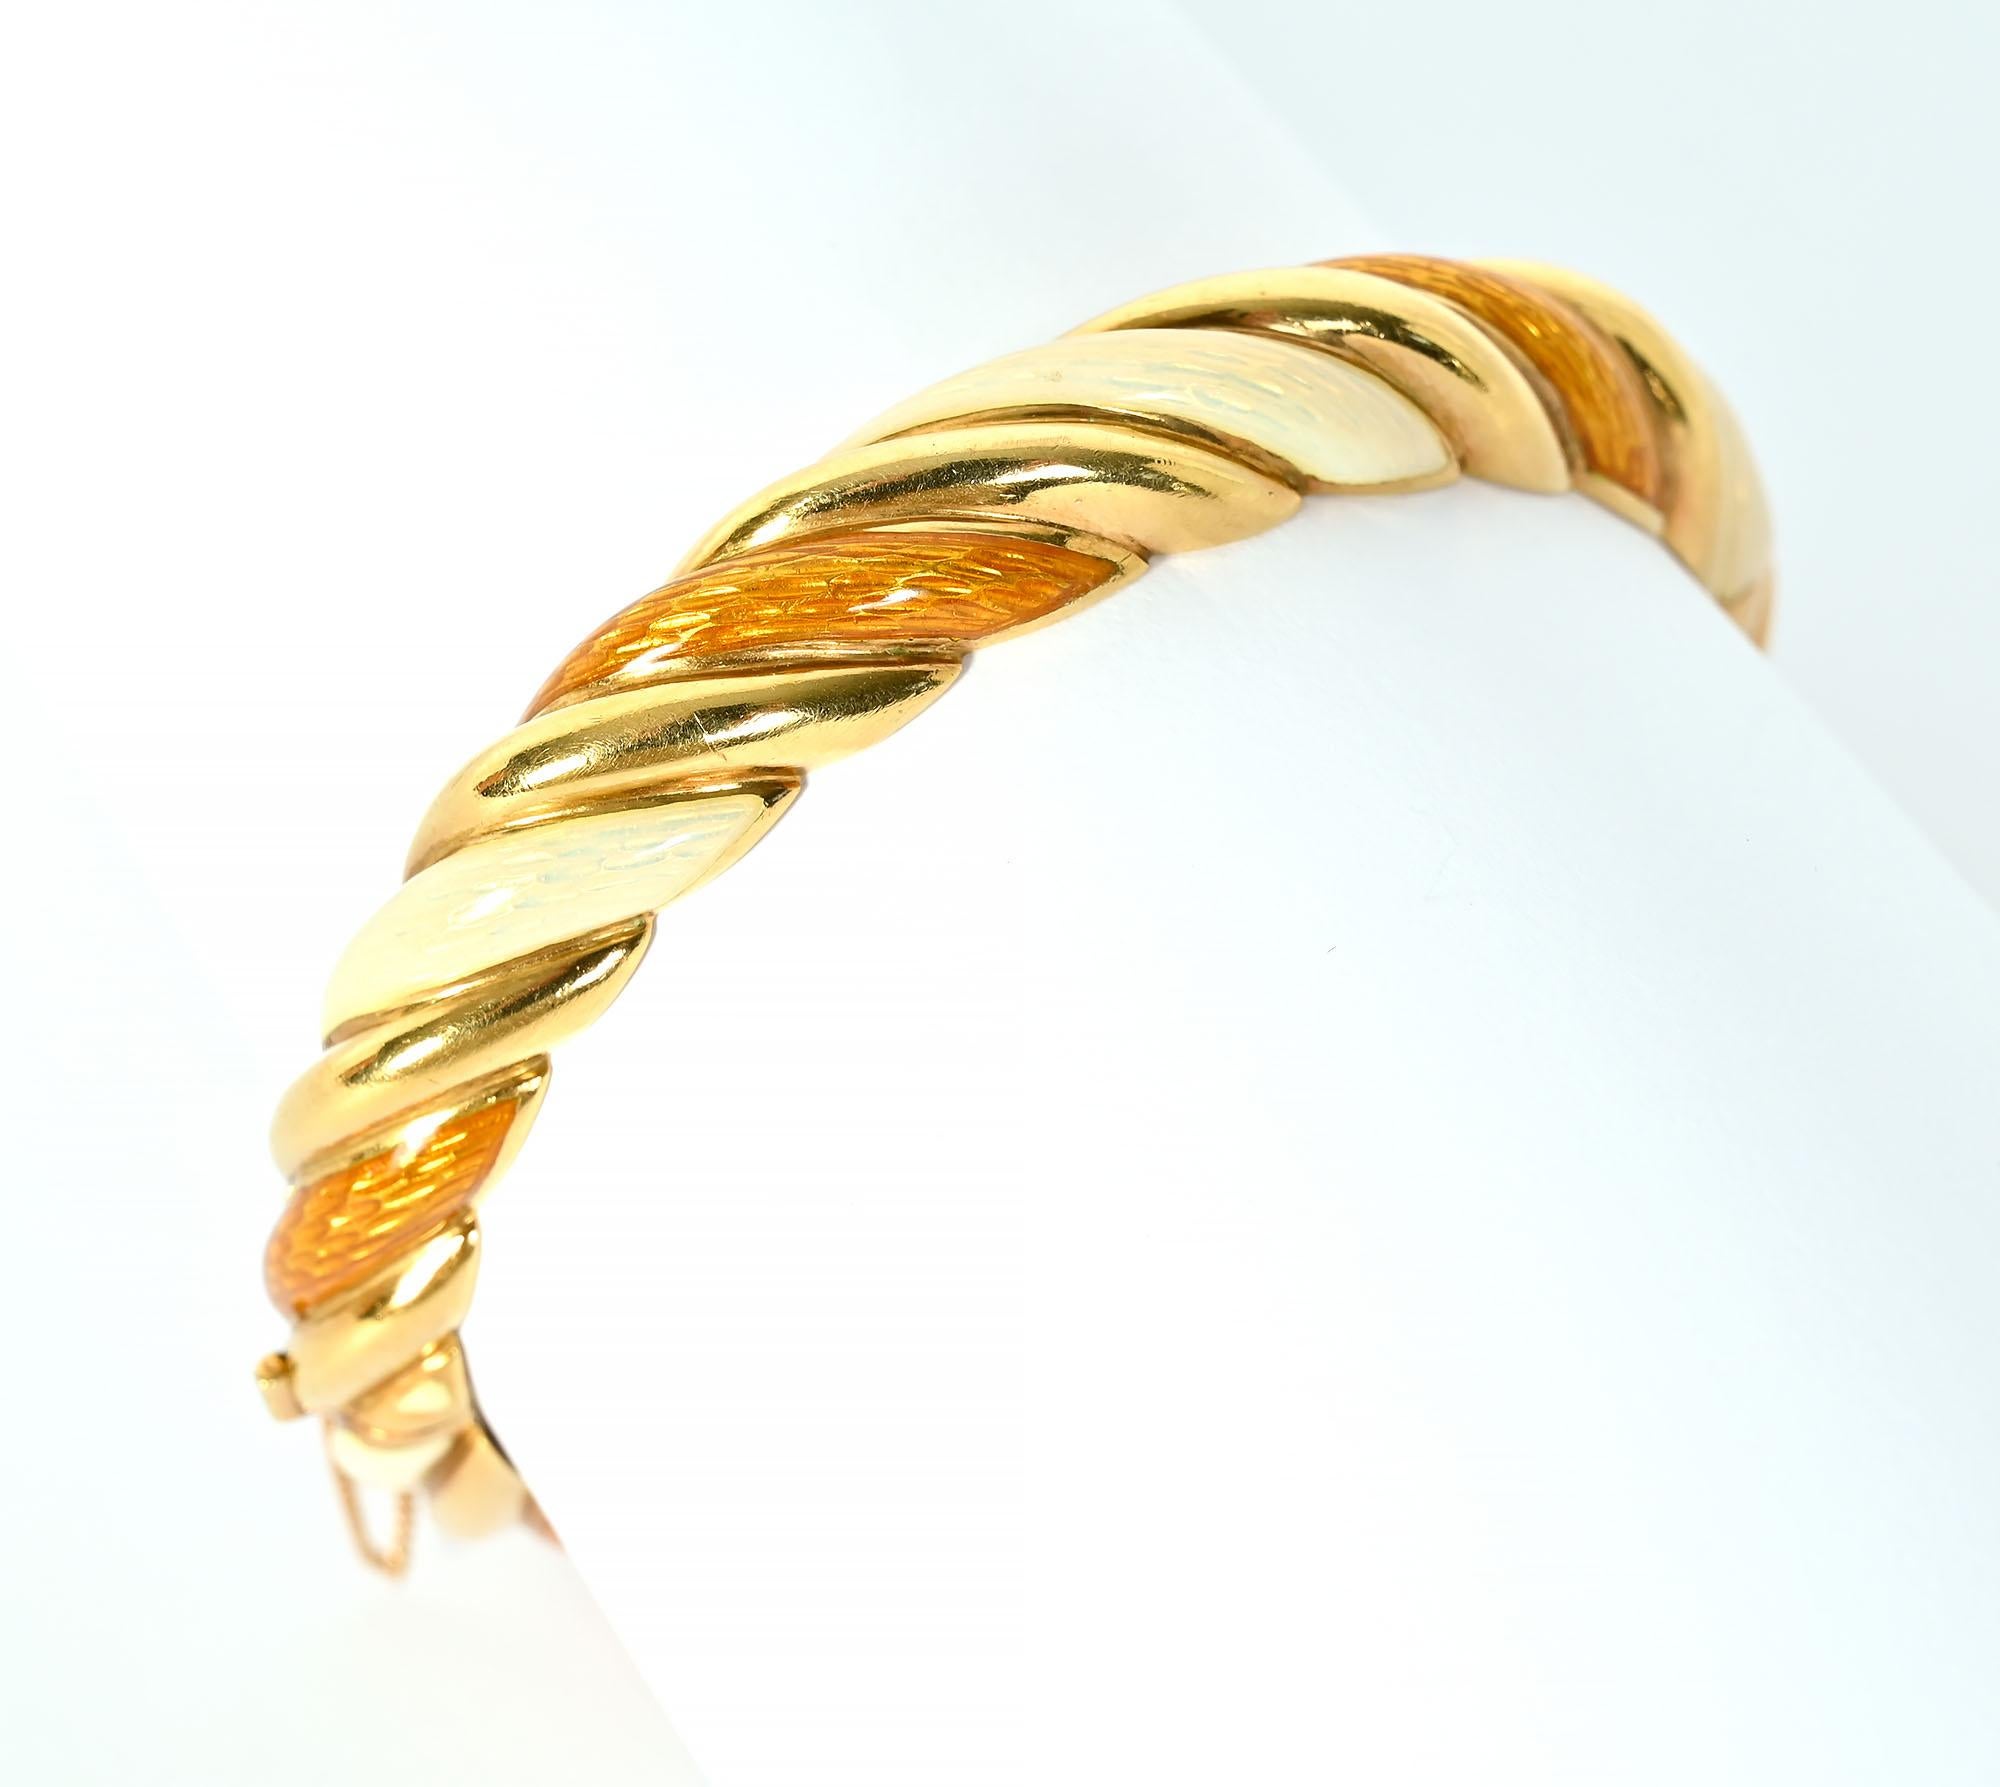 Tiffany-Emaille-Armreif mit ungewöhnlichen Farben. Es  hat drei gedrehte Bänder - eines in Gold und die beiden anderen mit perlmuttem Elfenbein und bernsteinfarbenen Emaille. Das Scharnierarmband hat einen Verschluss und eine Sicherheitskette.  Er